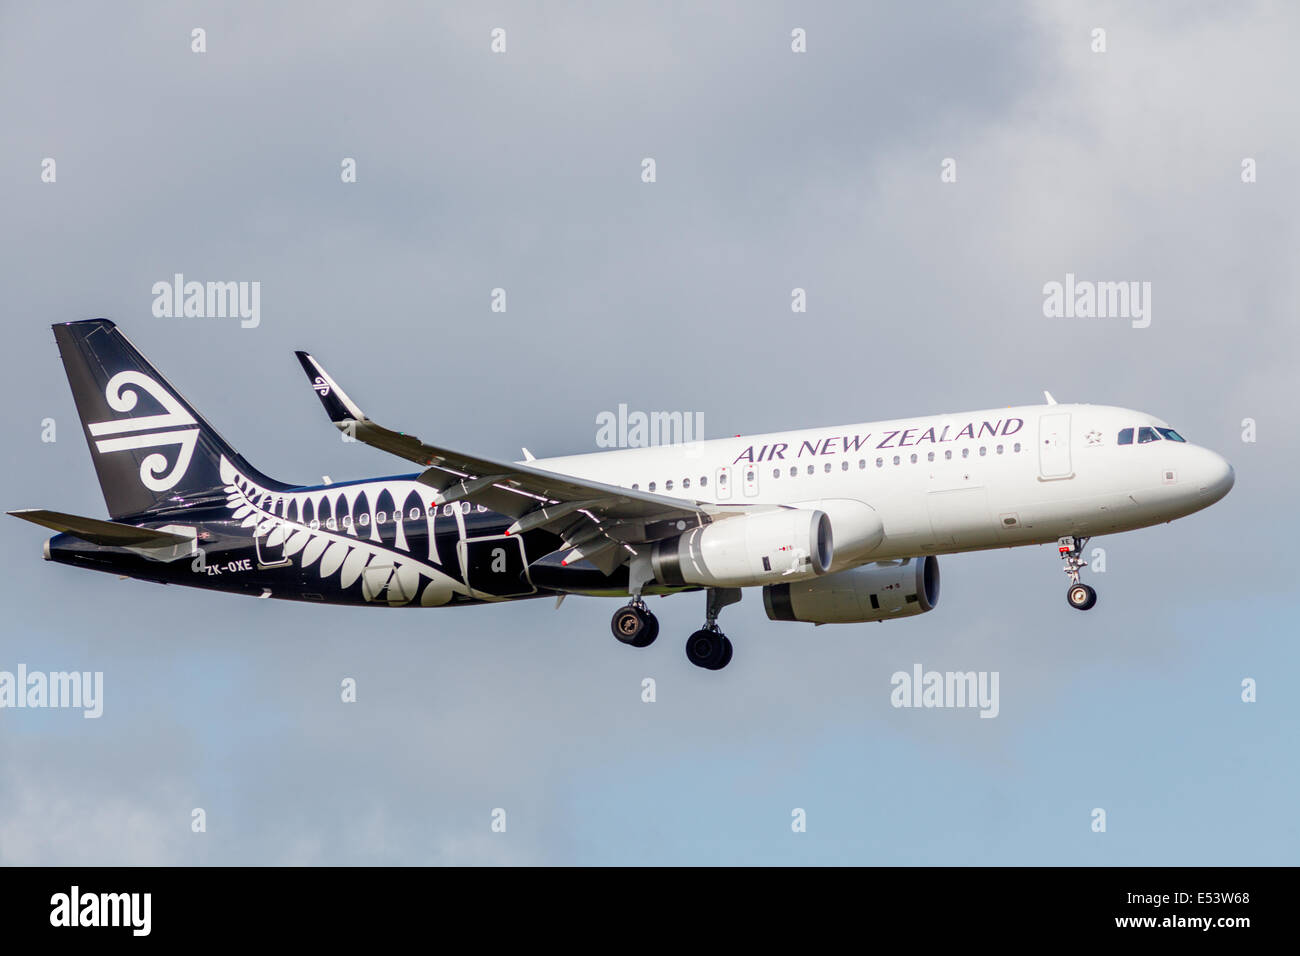 AIR NEW ZEALAND Airbus A320-200 zweistrahlige Jet, ZK-OXE im Endanflug an AKL Flughafen Auckland, Nordinsel, Neuseeland Stockfoto